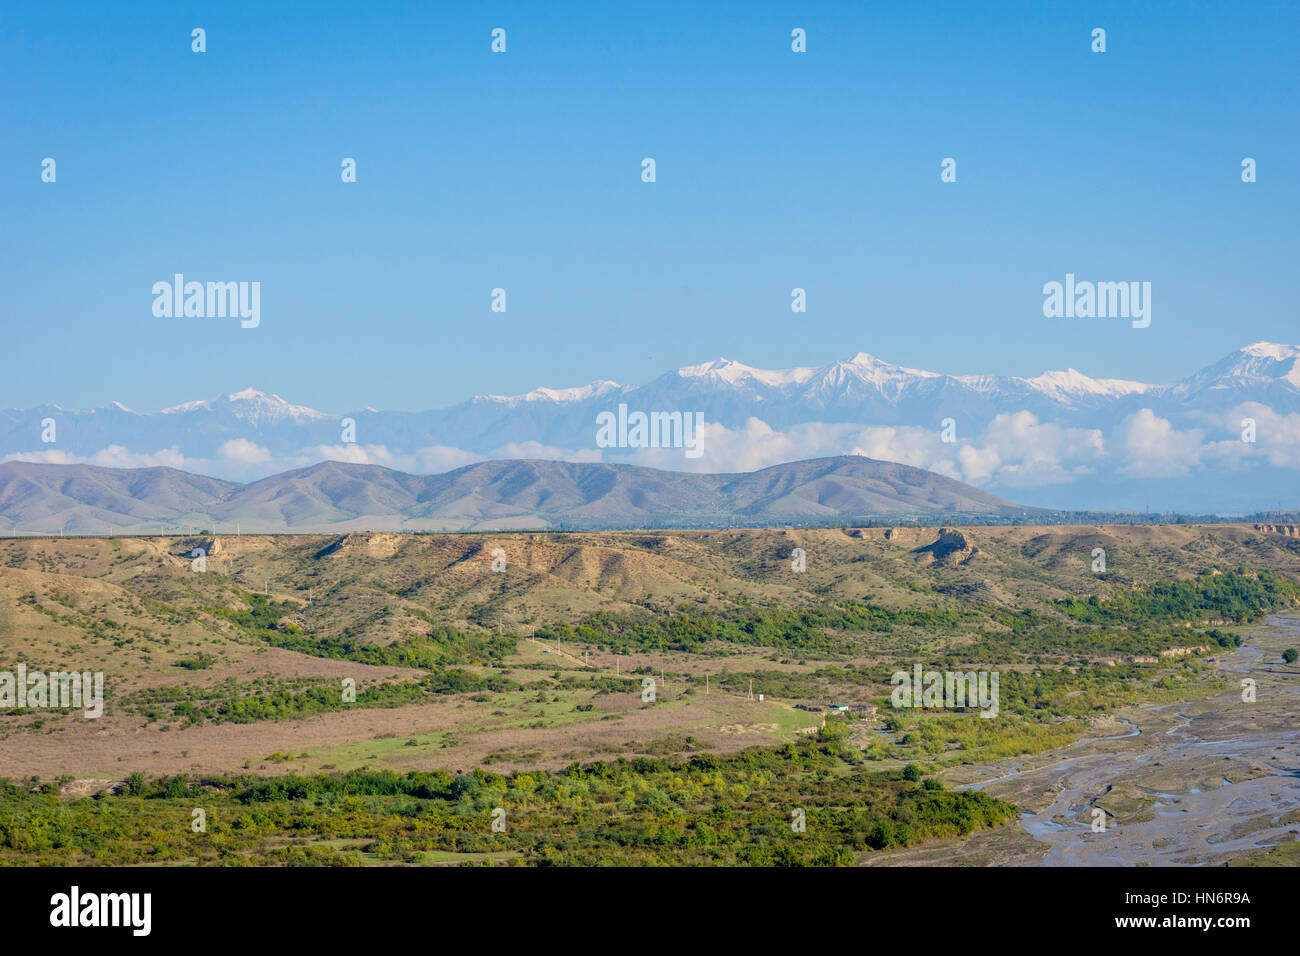 Fluss, grüne Wiese, goldene Felder und Berge mit schneebedeckten Gipfeln, erstaunliche Landschaften von Aserbaidschan Stockfoto